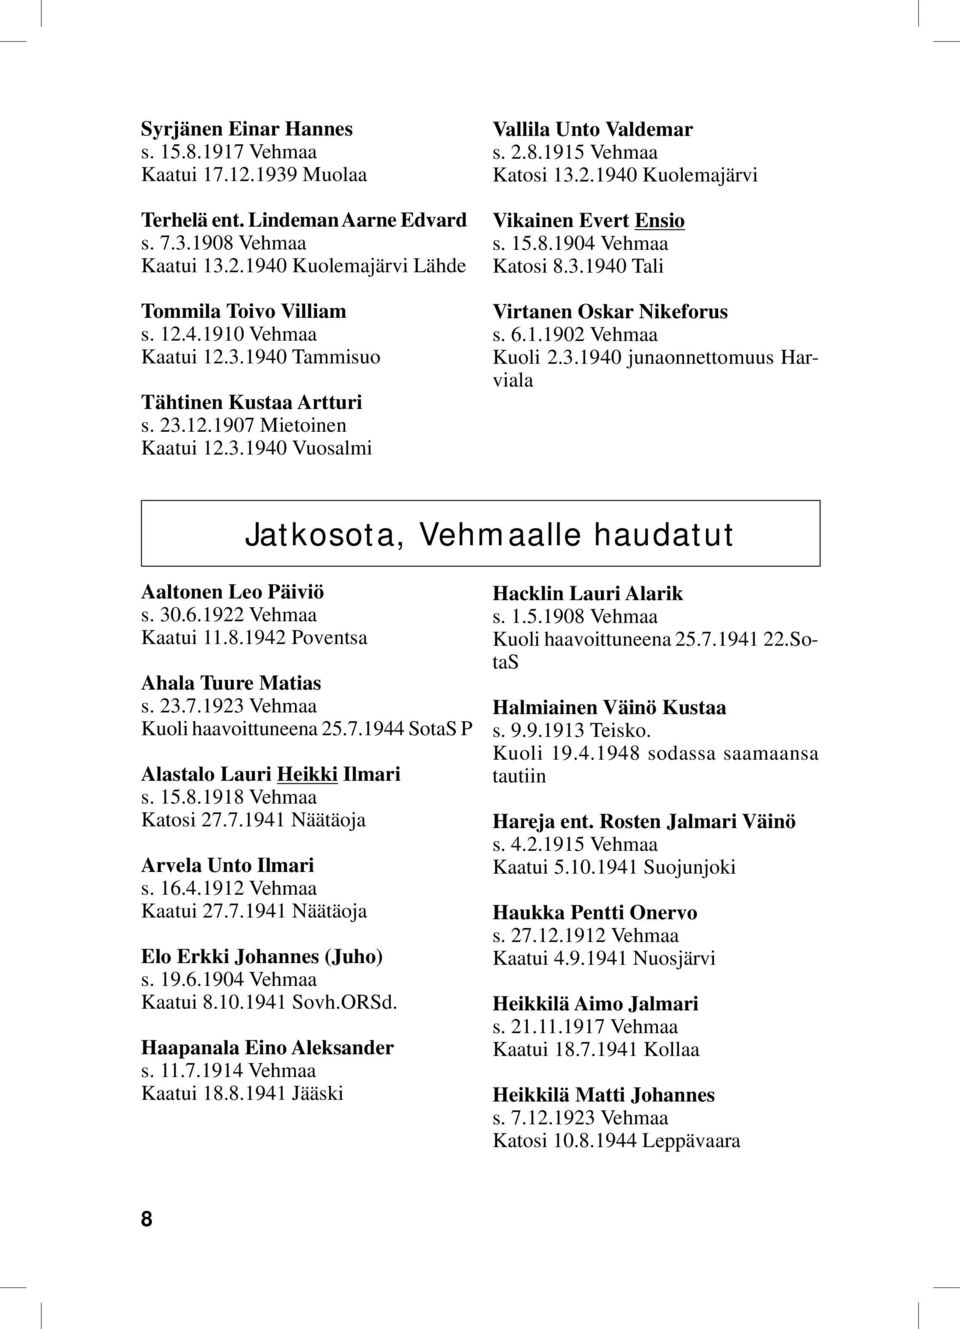 3.1940 Tali Virtanen Oskar Nikeforus s. 6.1.1902 Vehmaa Kuoli 2.3.1940 junaonnettomuus Harviala Jatkosota, Vehmaalle haudatut Aaltonen Leo Päiviö s. 30.6.1922 Vehmaa Kaatui 11.8.